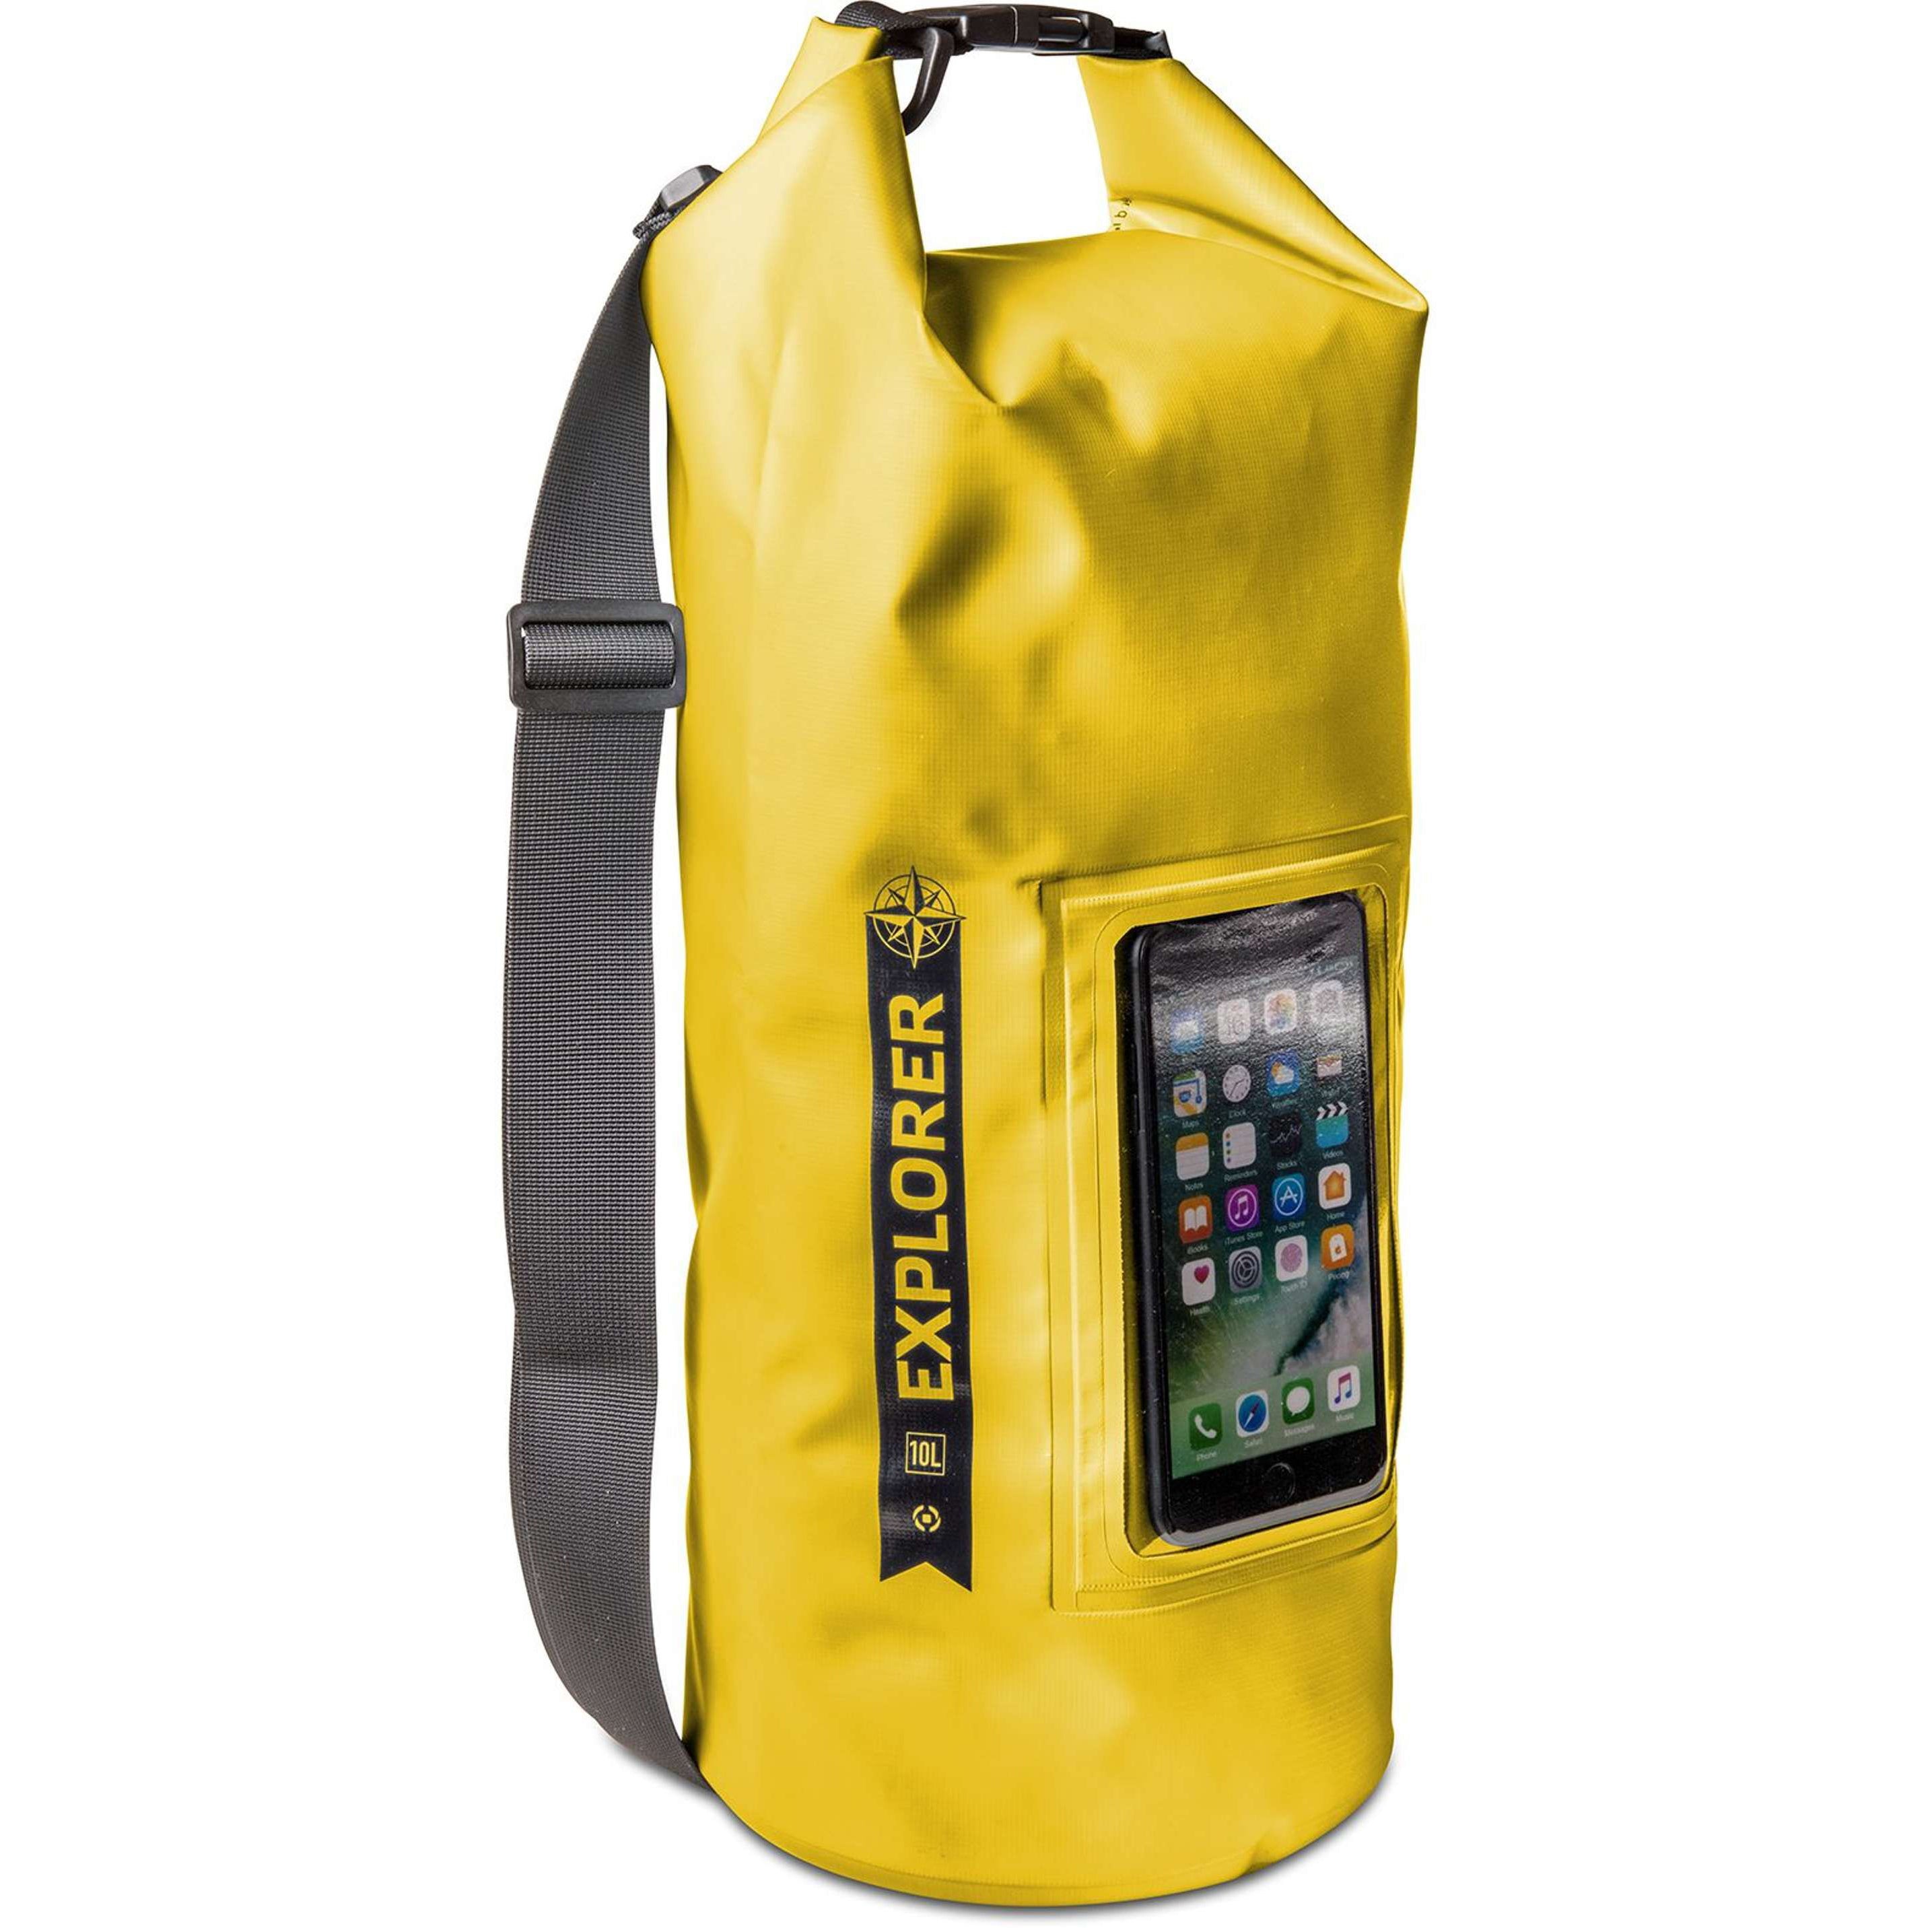 Rugzak Explorer 10 liter van Celly geel zijaanzicht met smartphone in de houder